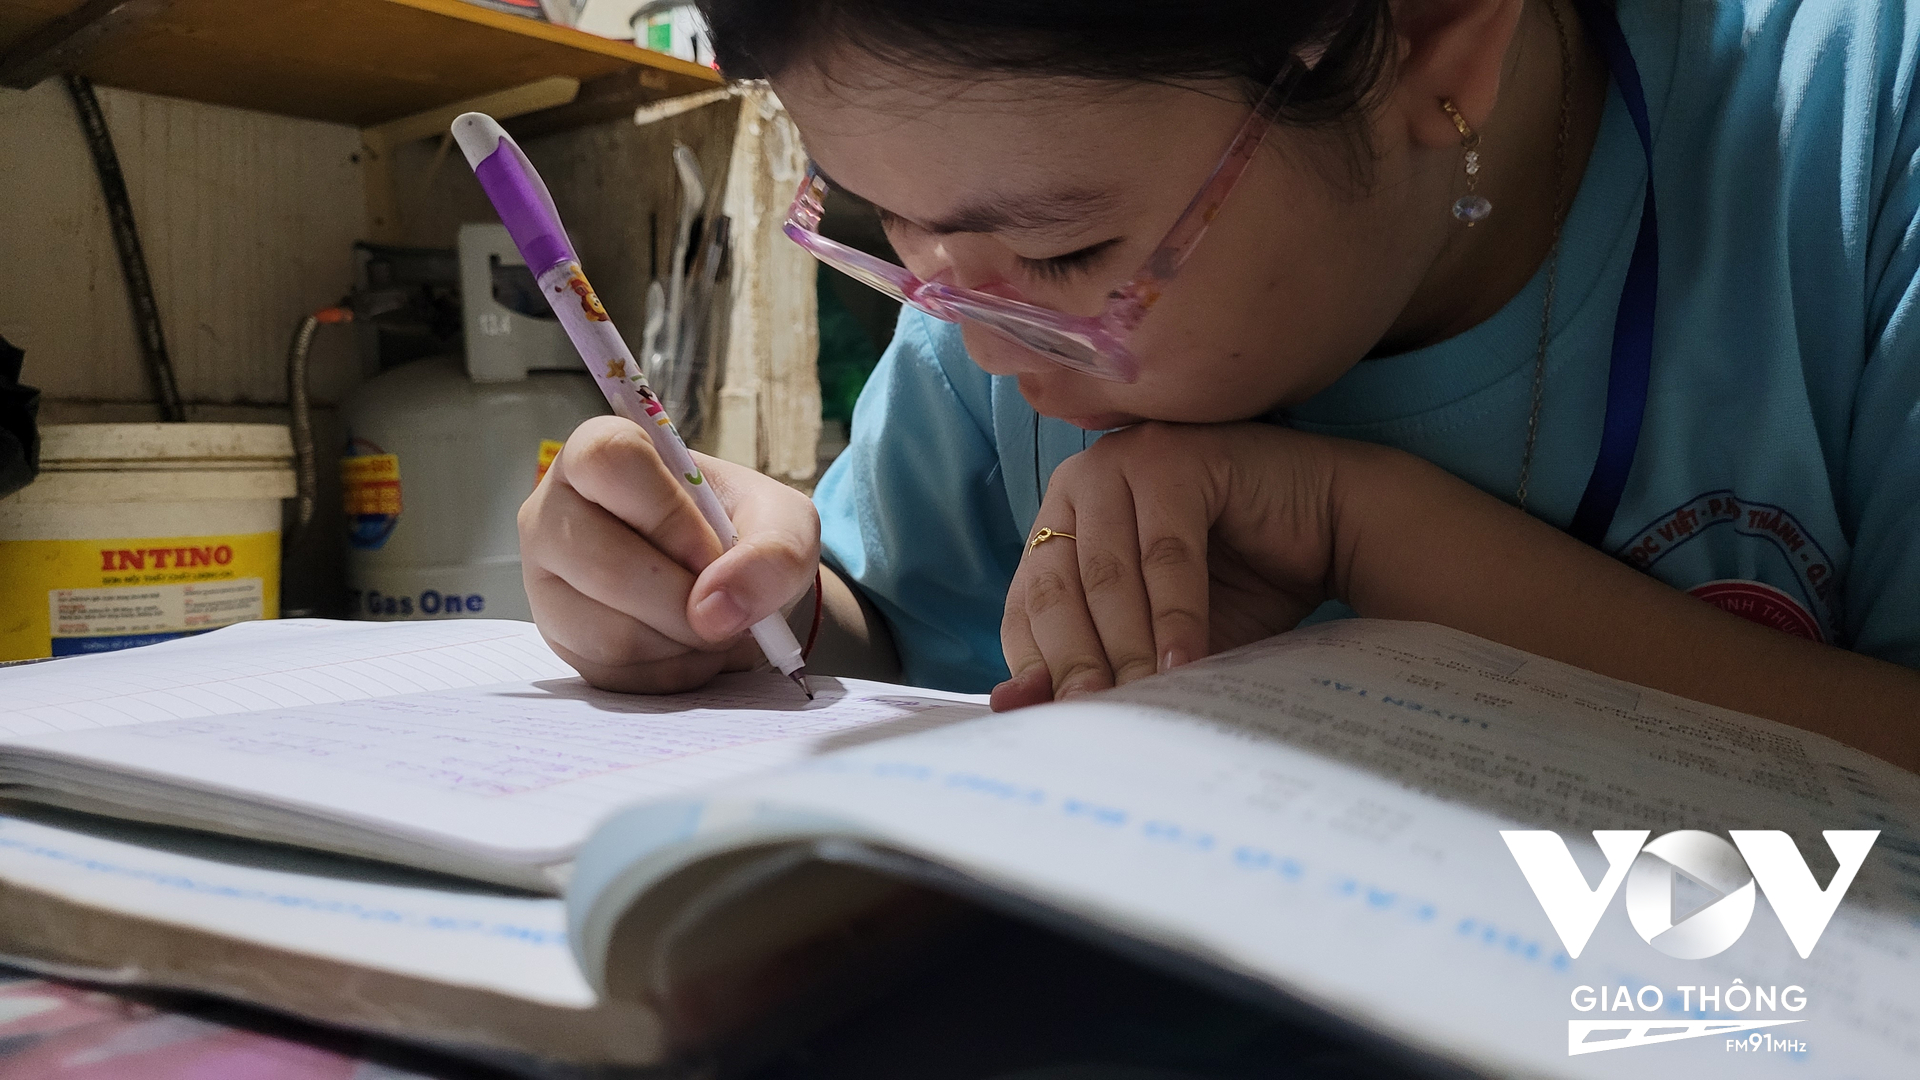 Con gái chị Trang bị tật ở mắt, học trường thường không theo kịp các bạn, học trường khiếm thị không thể xoay sở được chi phí do hoàn cảnh khó khăn